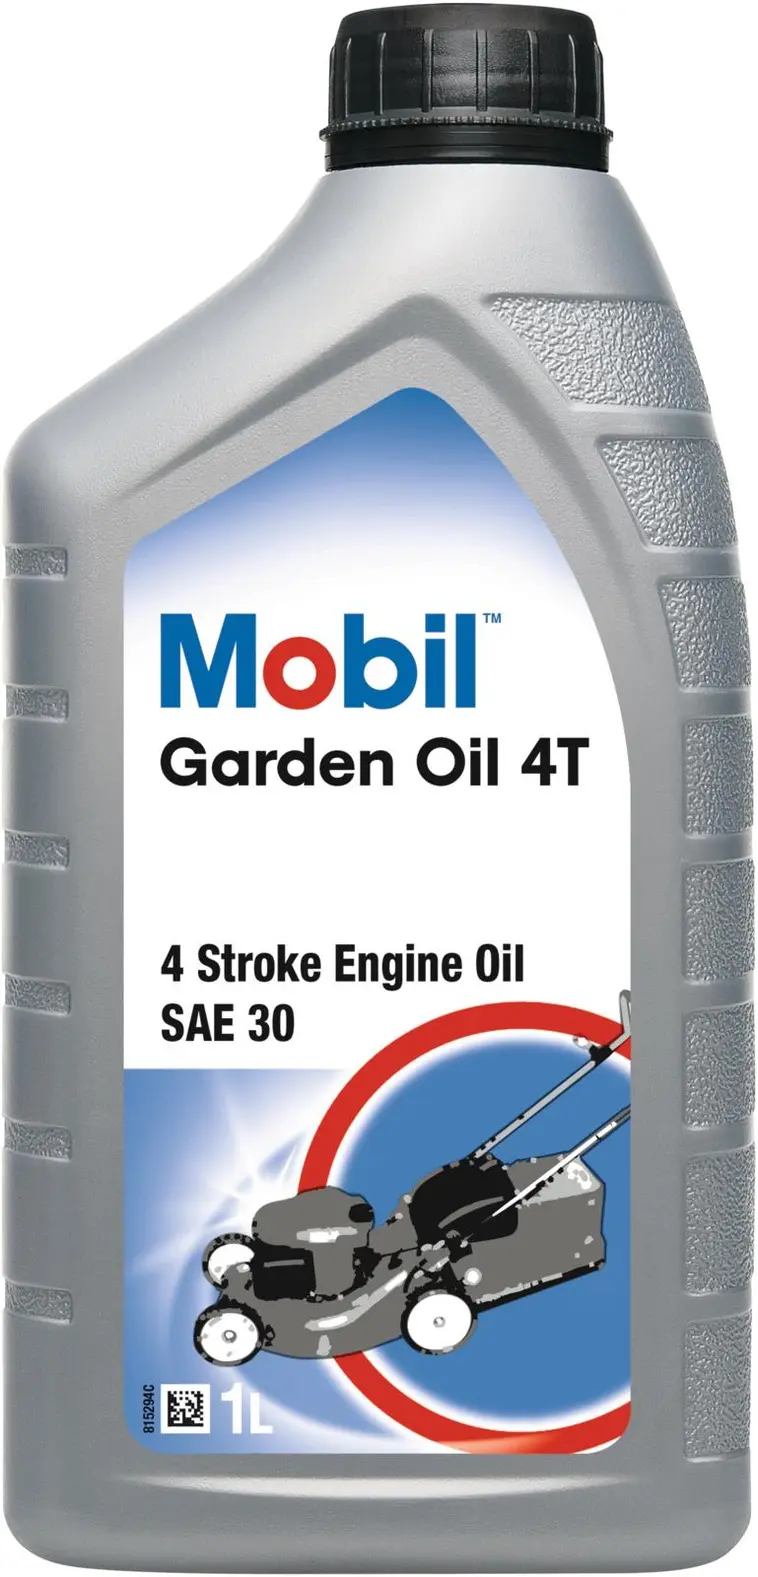 Mobil Garden Oil 4T